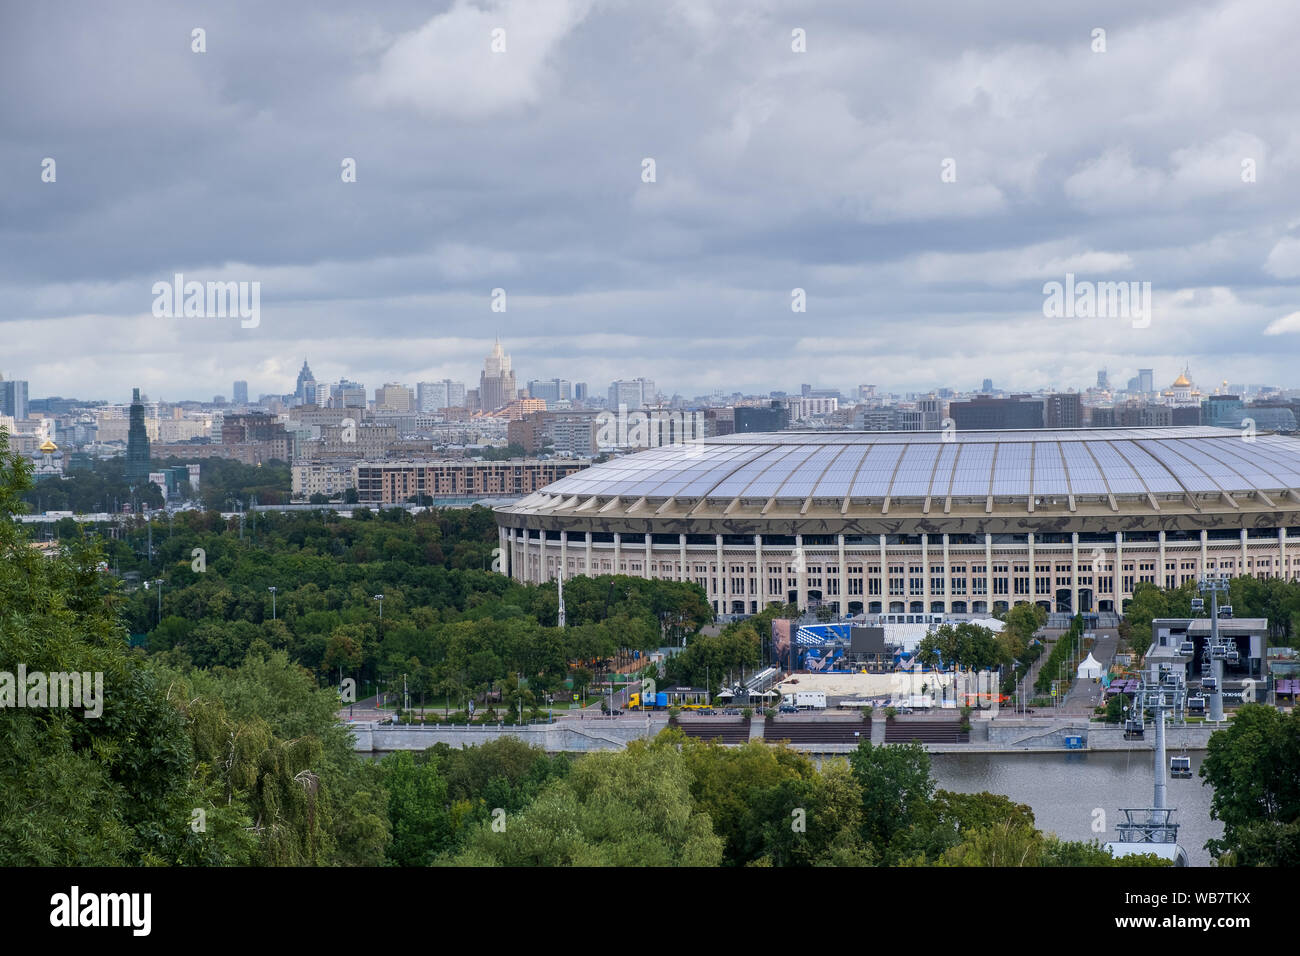 Moscou, Russie - 1 août 2019 : stade Luzhniki et complexe de moineaux un jour nuageux Banque D'Images